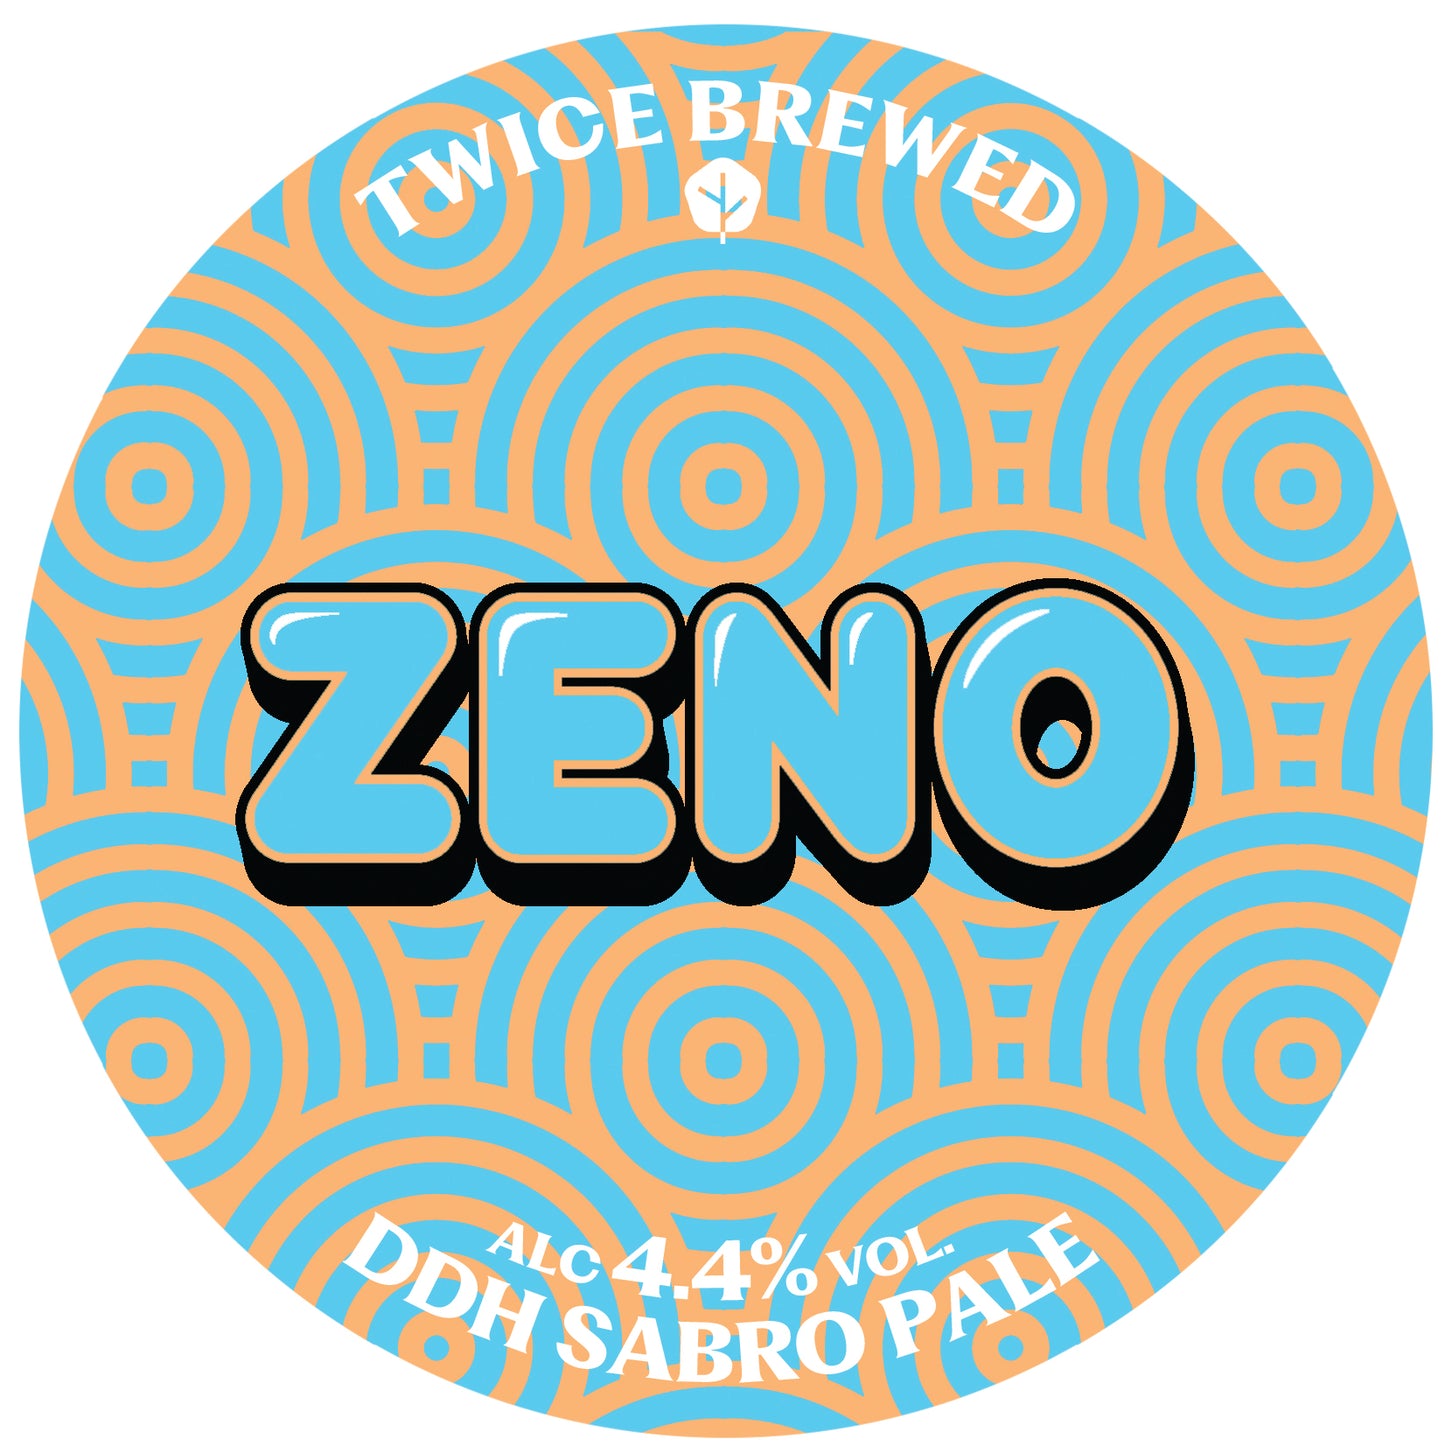 Zeno, DDH Sabro Pale, 4.4% - 440ml Can